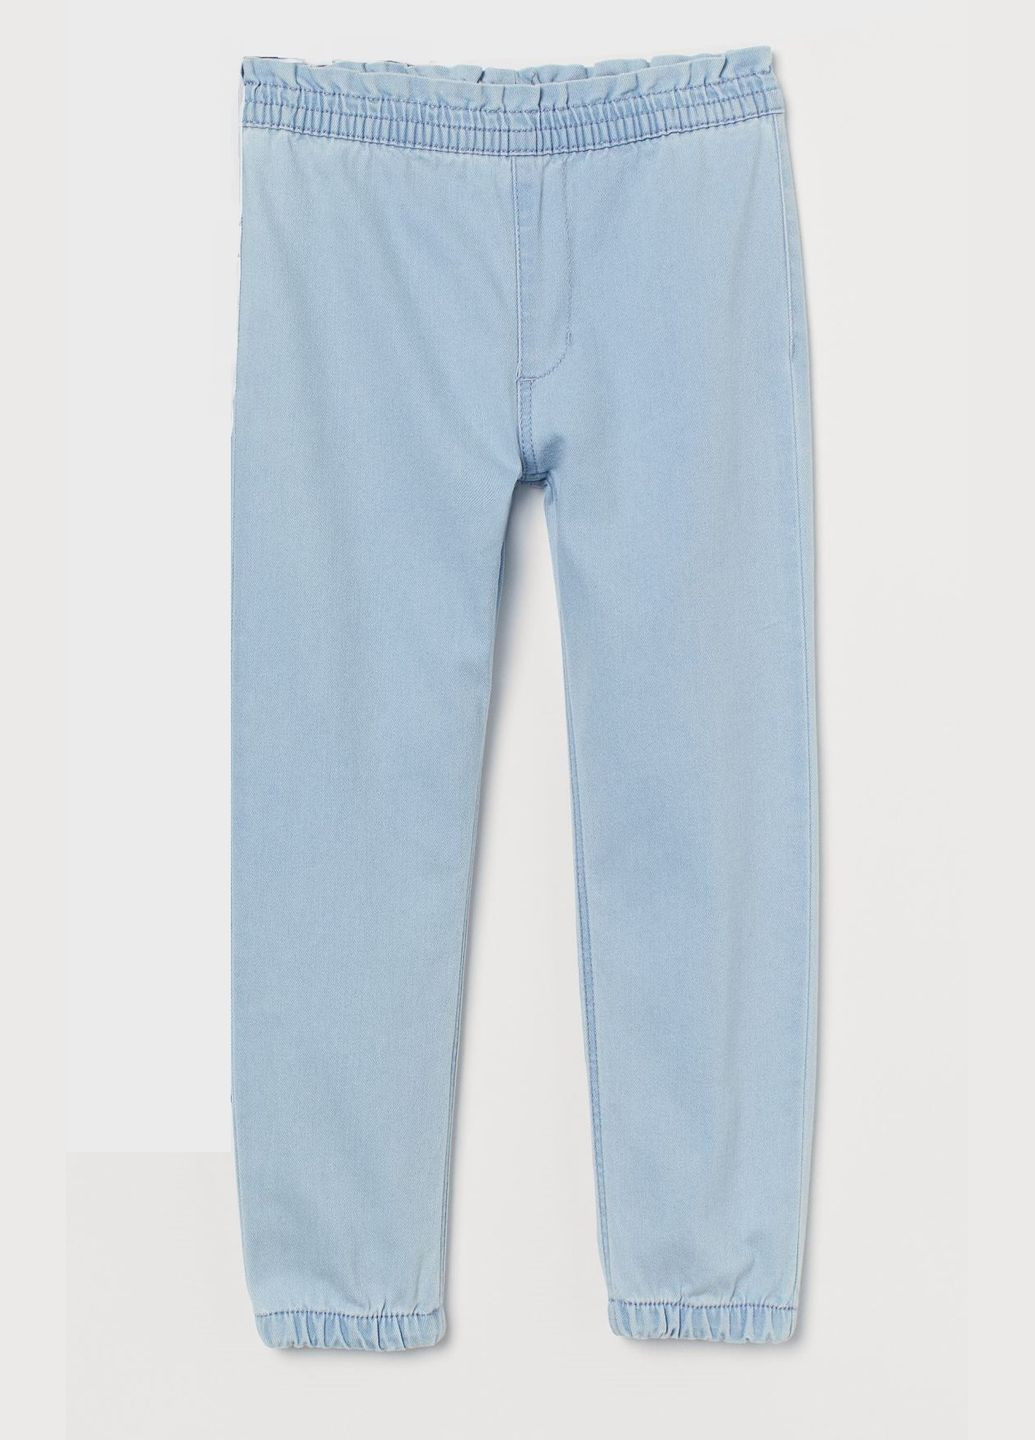 Светло-голубые джинсовые летние брюки H&M